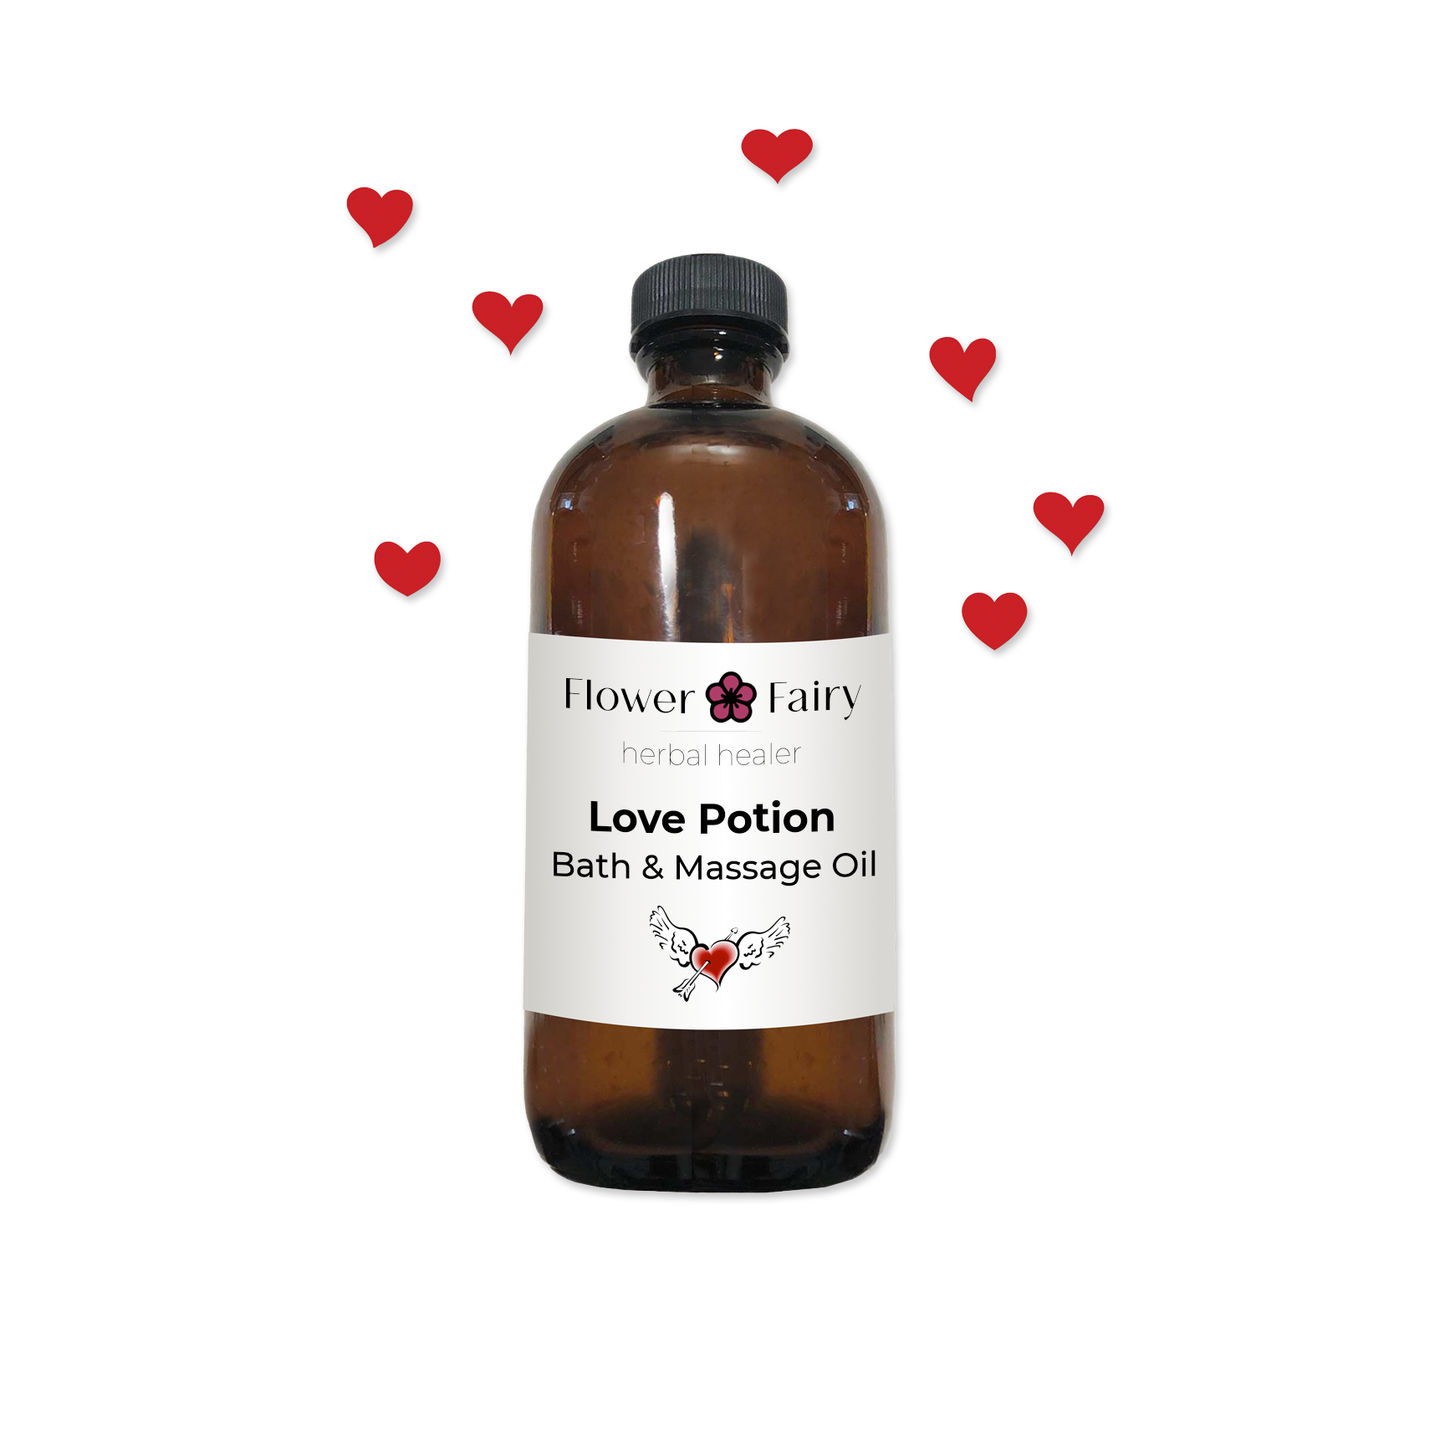 Love Potion Bath & Massage Oil